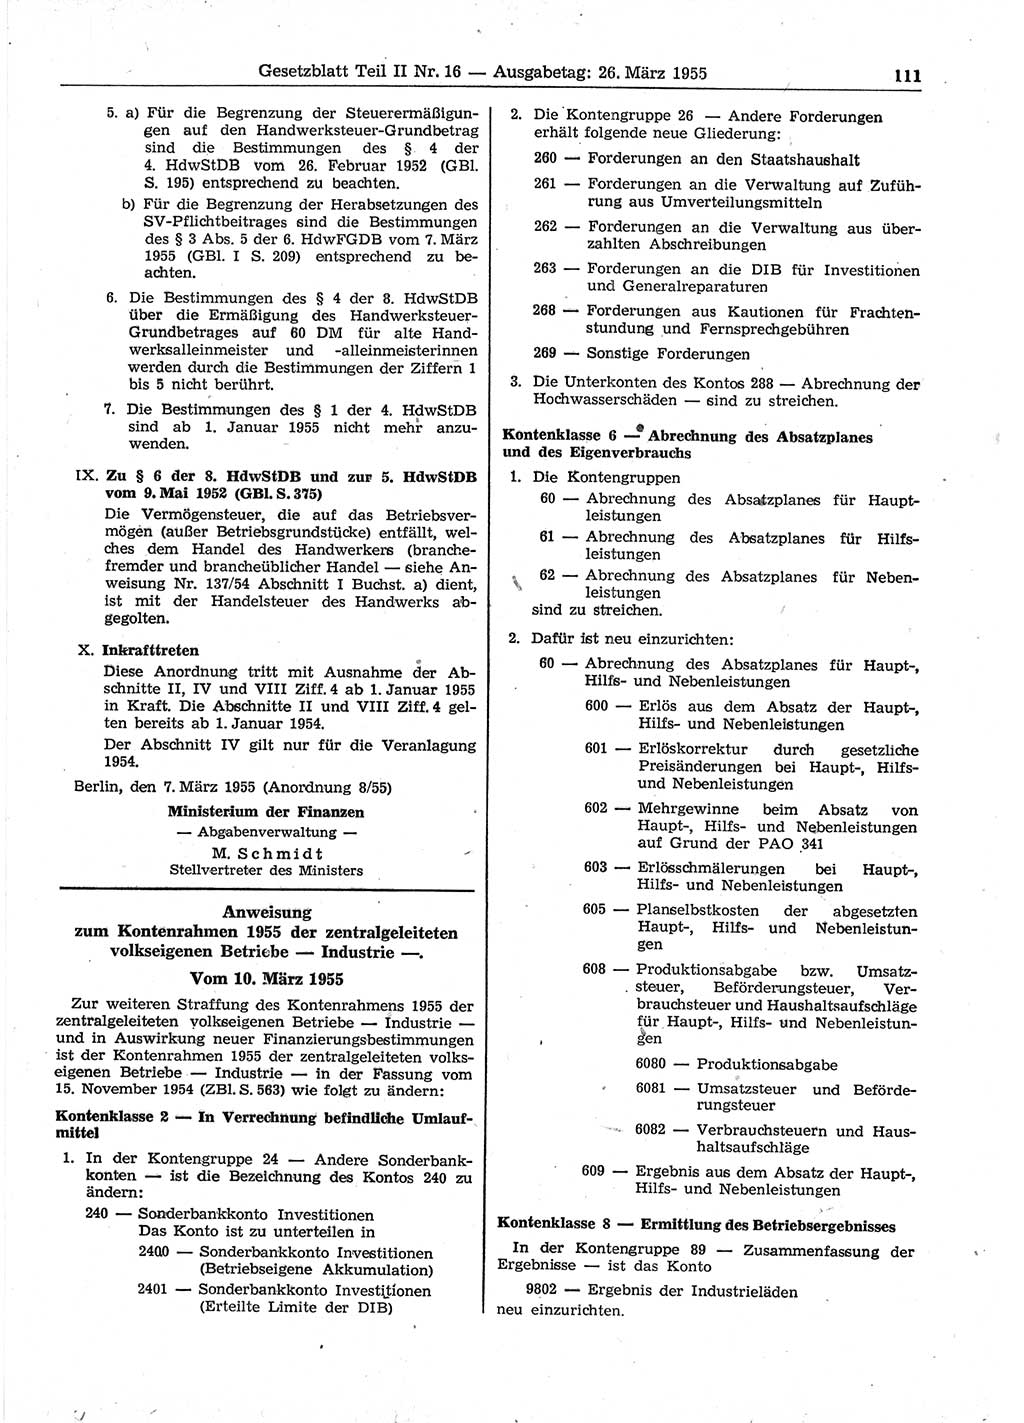 Gesetzblatt (GBl.) der Deutschen Demokratischen Republik (DDR) Teil ⅠⅠ 1955, Seite 111 (GBl. DDR ⅠⅠ 1955, S. 111)